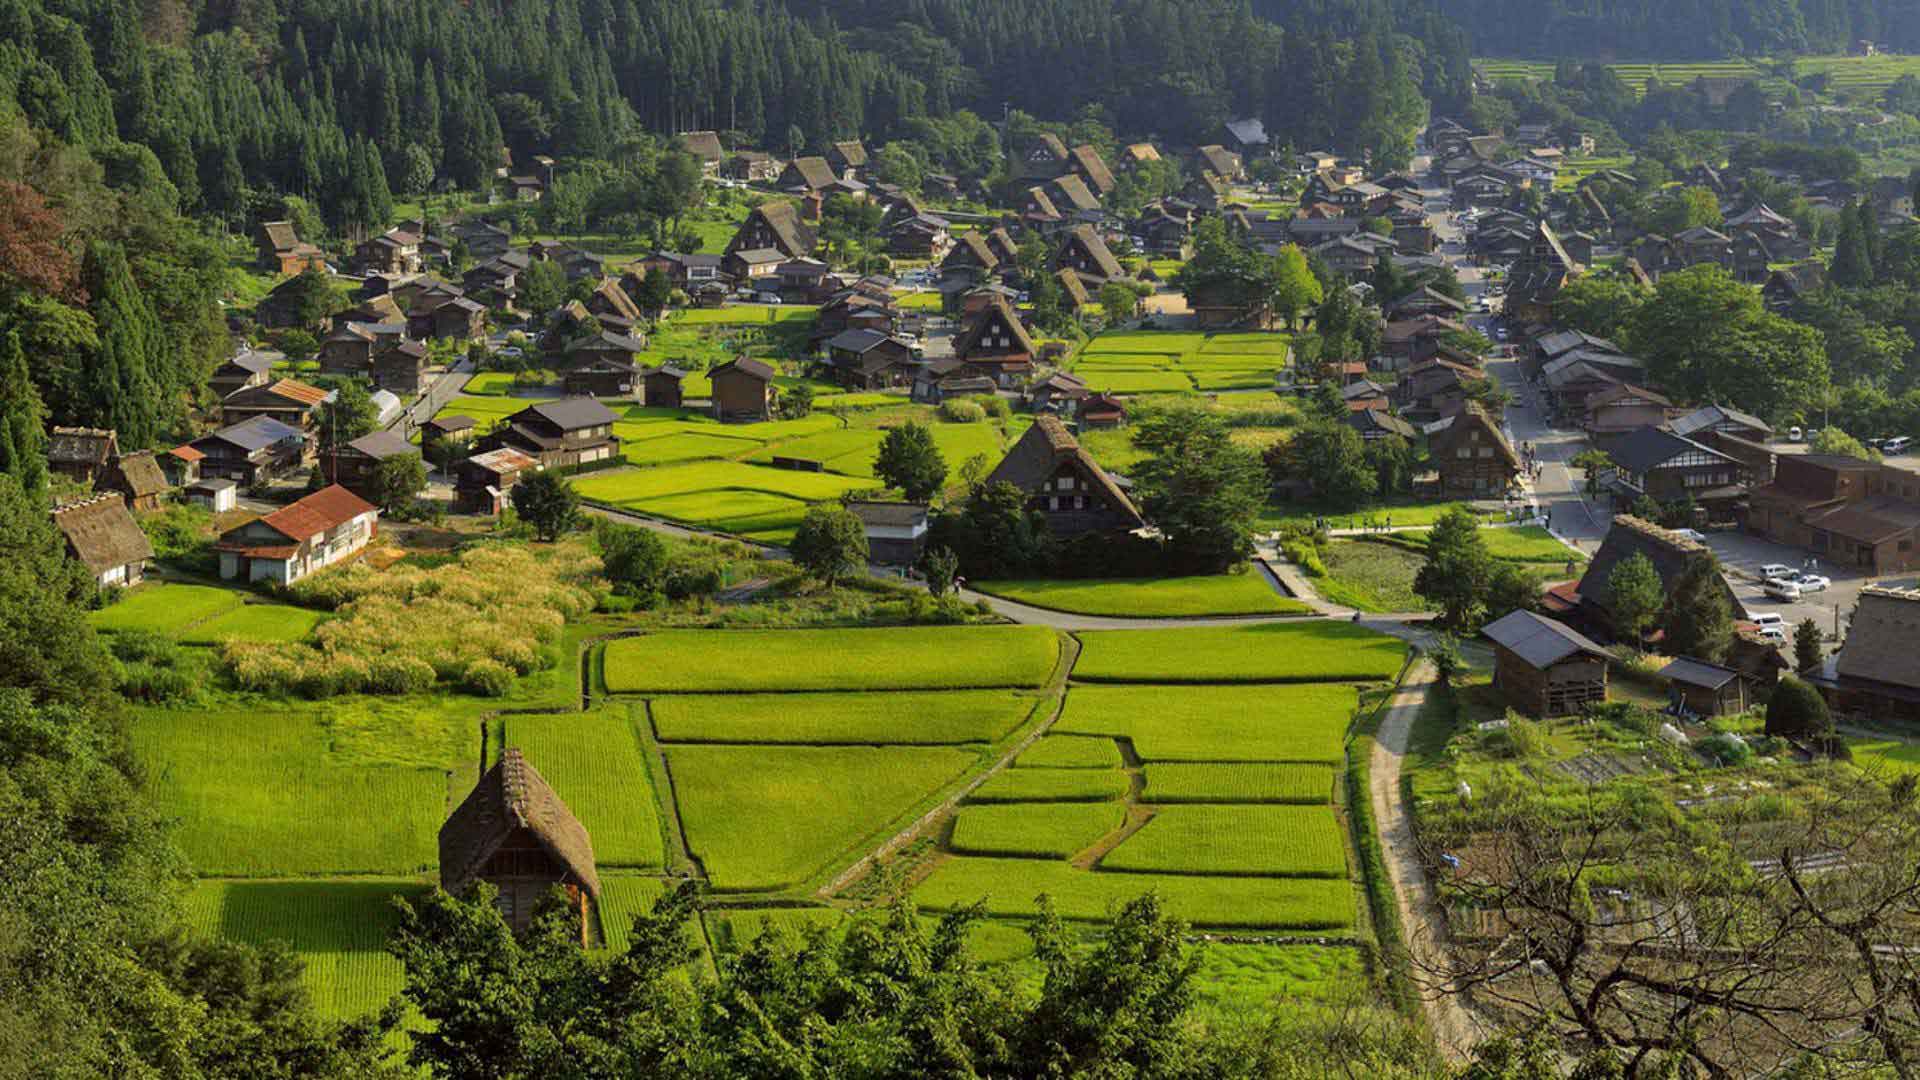 excursion visite village Shirakawa Go sejour japon